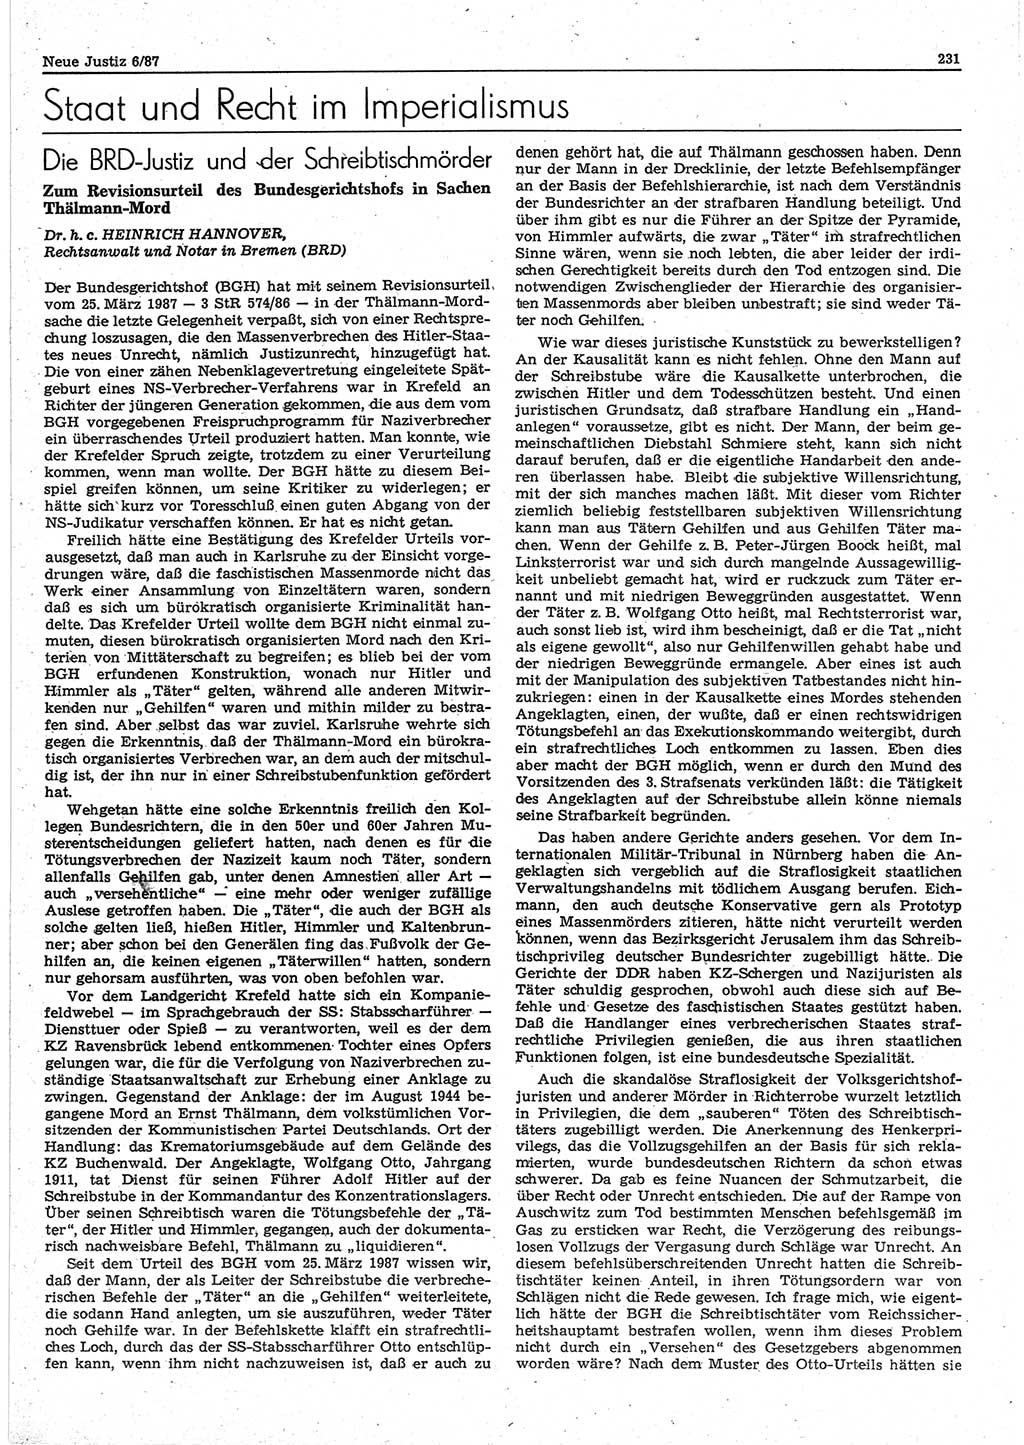 Neue Justiz (NJ), Zeitschrift für sozialistisches Recht und Gesetzlichkeit [Deutsche Demokratische Republik (DDR)], 41. Jahrgang 1987, Seite 231 (NJ DDR 1987, S. 231)